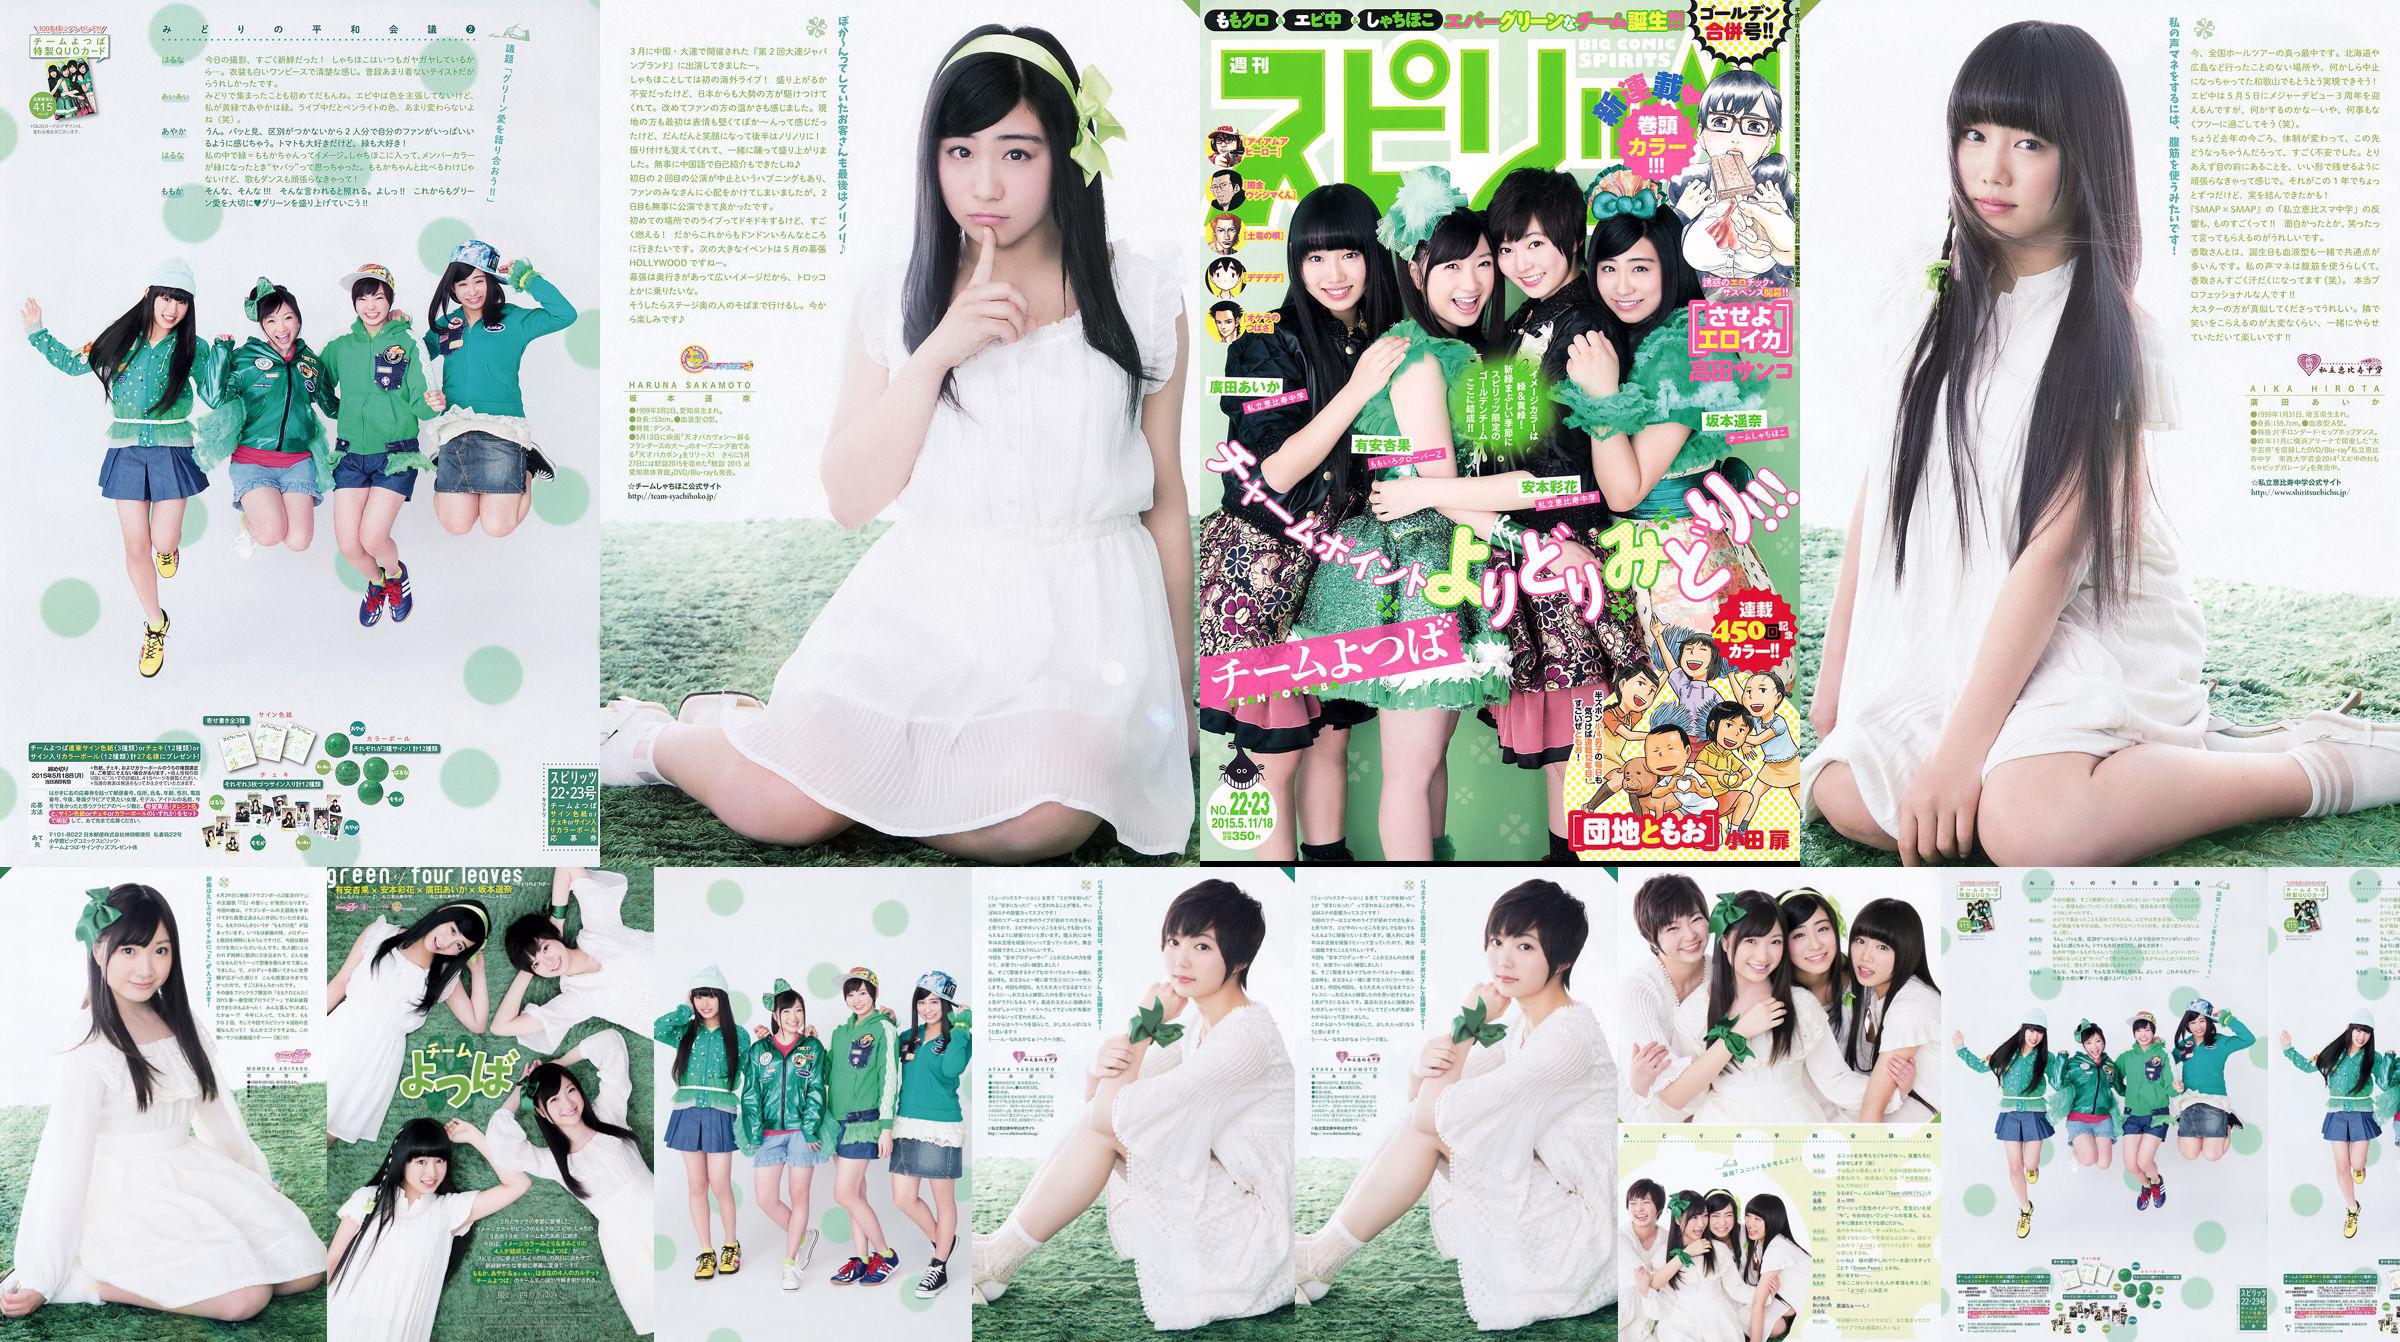 [Weekly Big Comic Spirits] Ayaka Ayana Ayana Sakamoto Haruna Hirota 2015 No.22-23 Photo Magazine No.355a35 Page 1